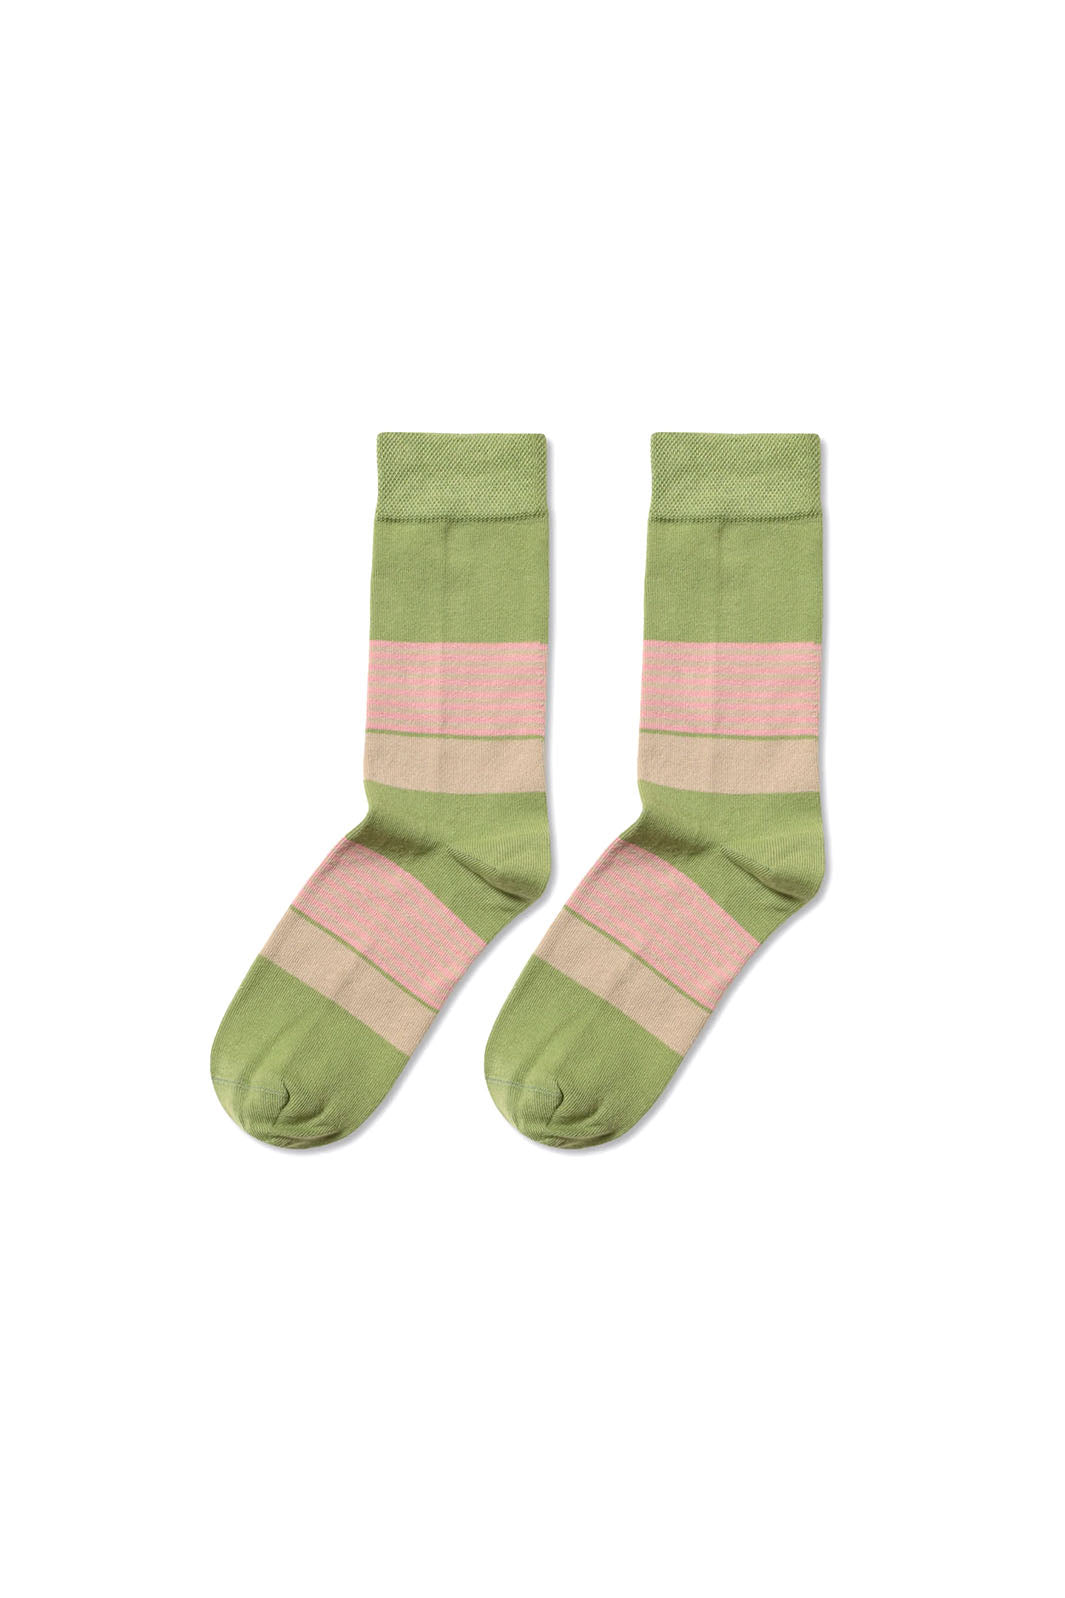 Stripe Socks - Multi Stripe Green